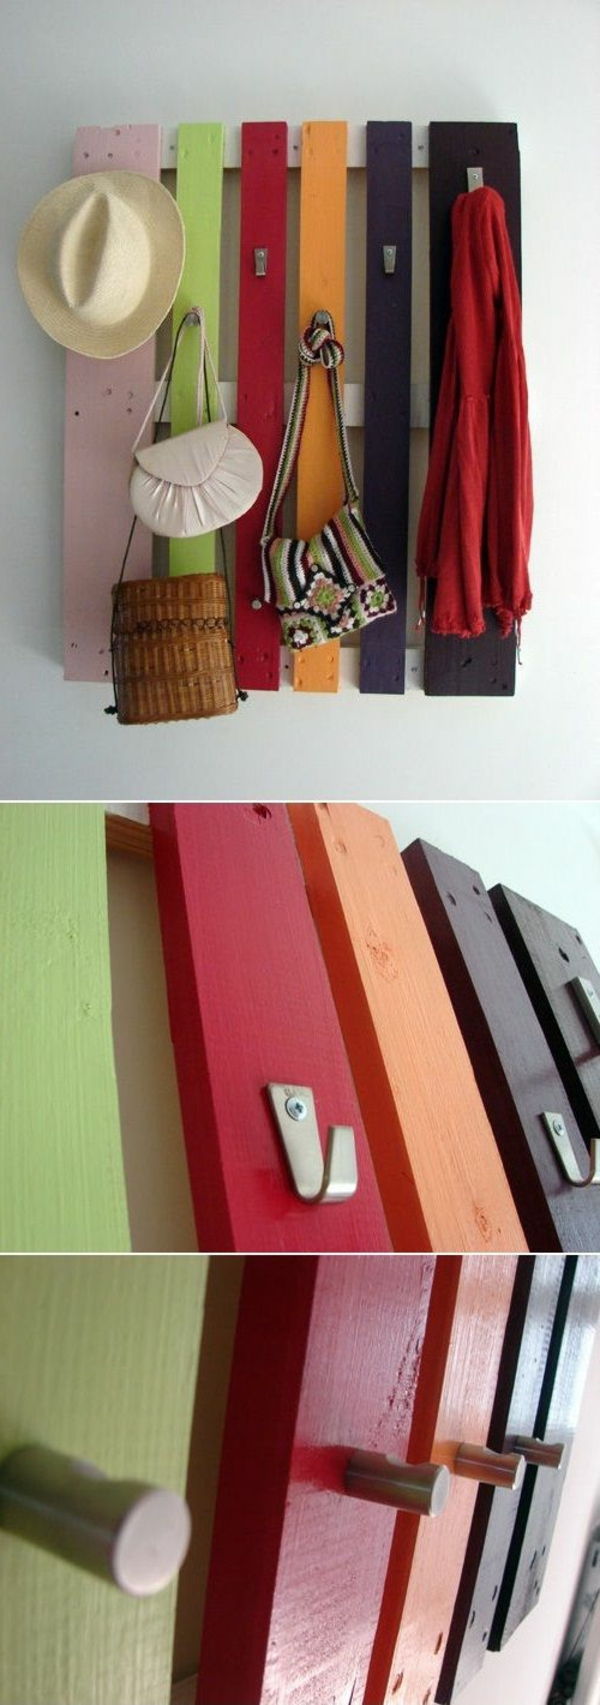 vegg krok-i-forskjellige-farger-av-trepaller